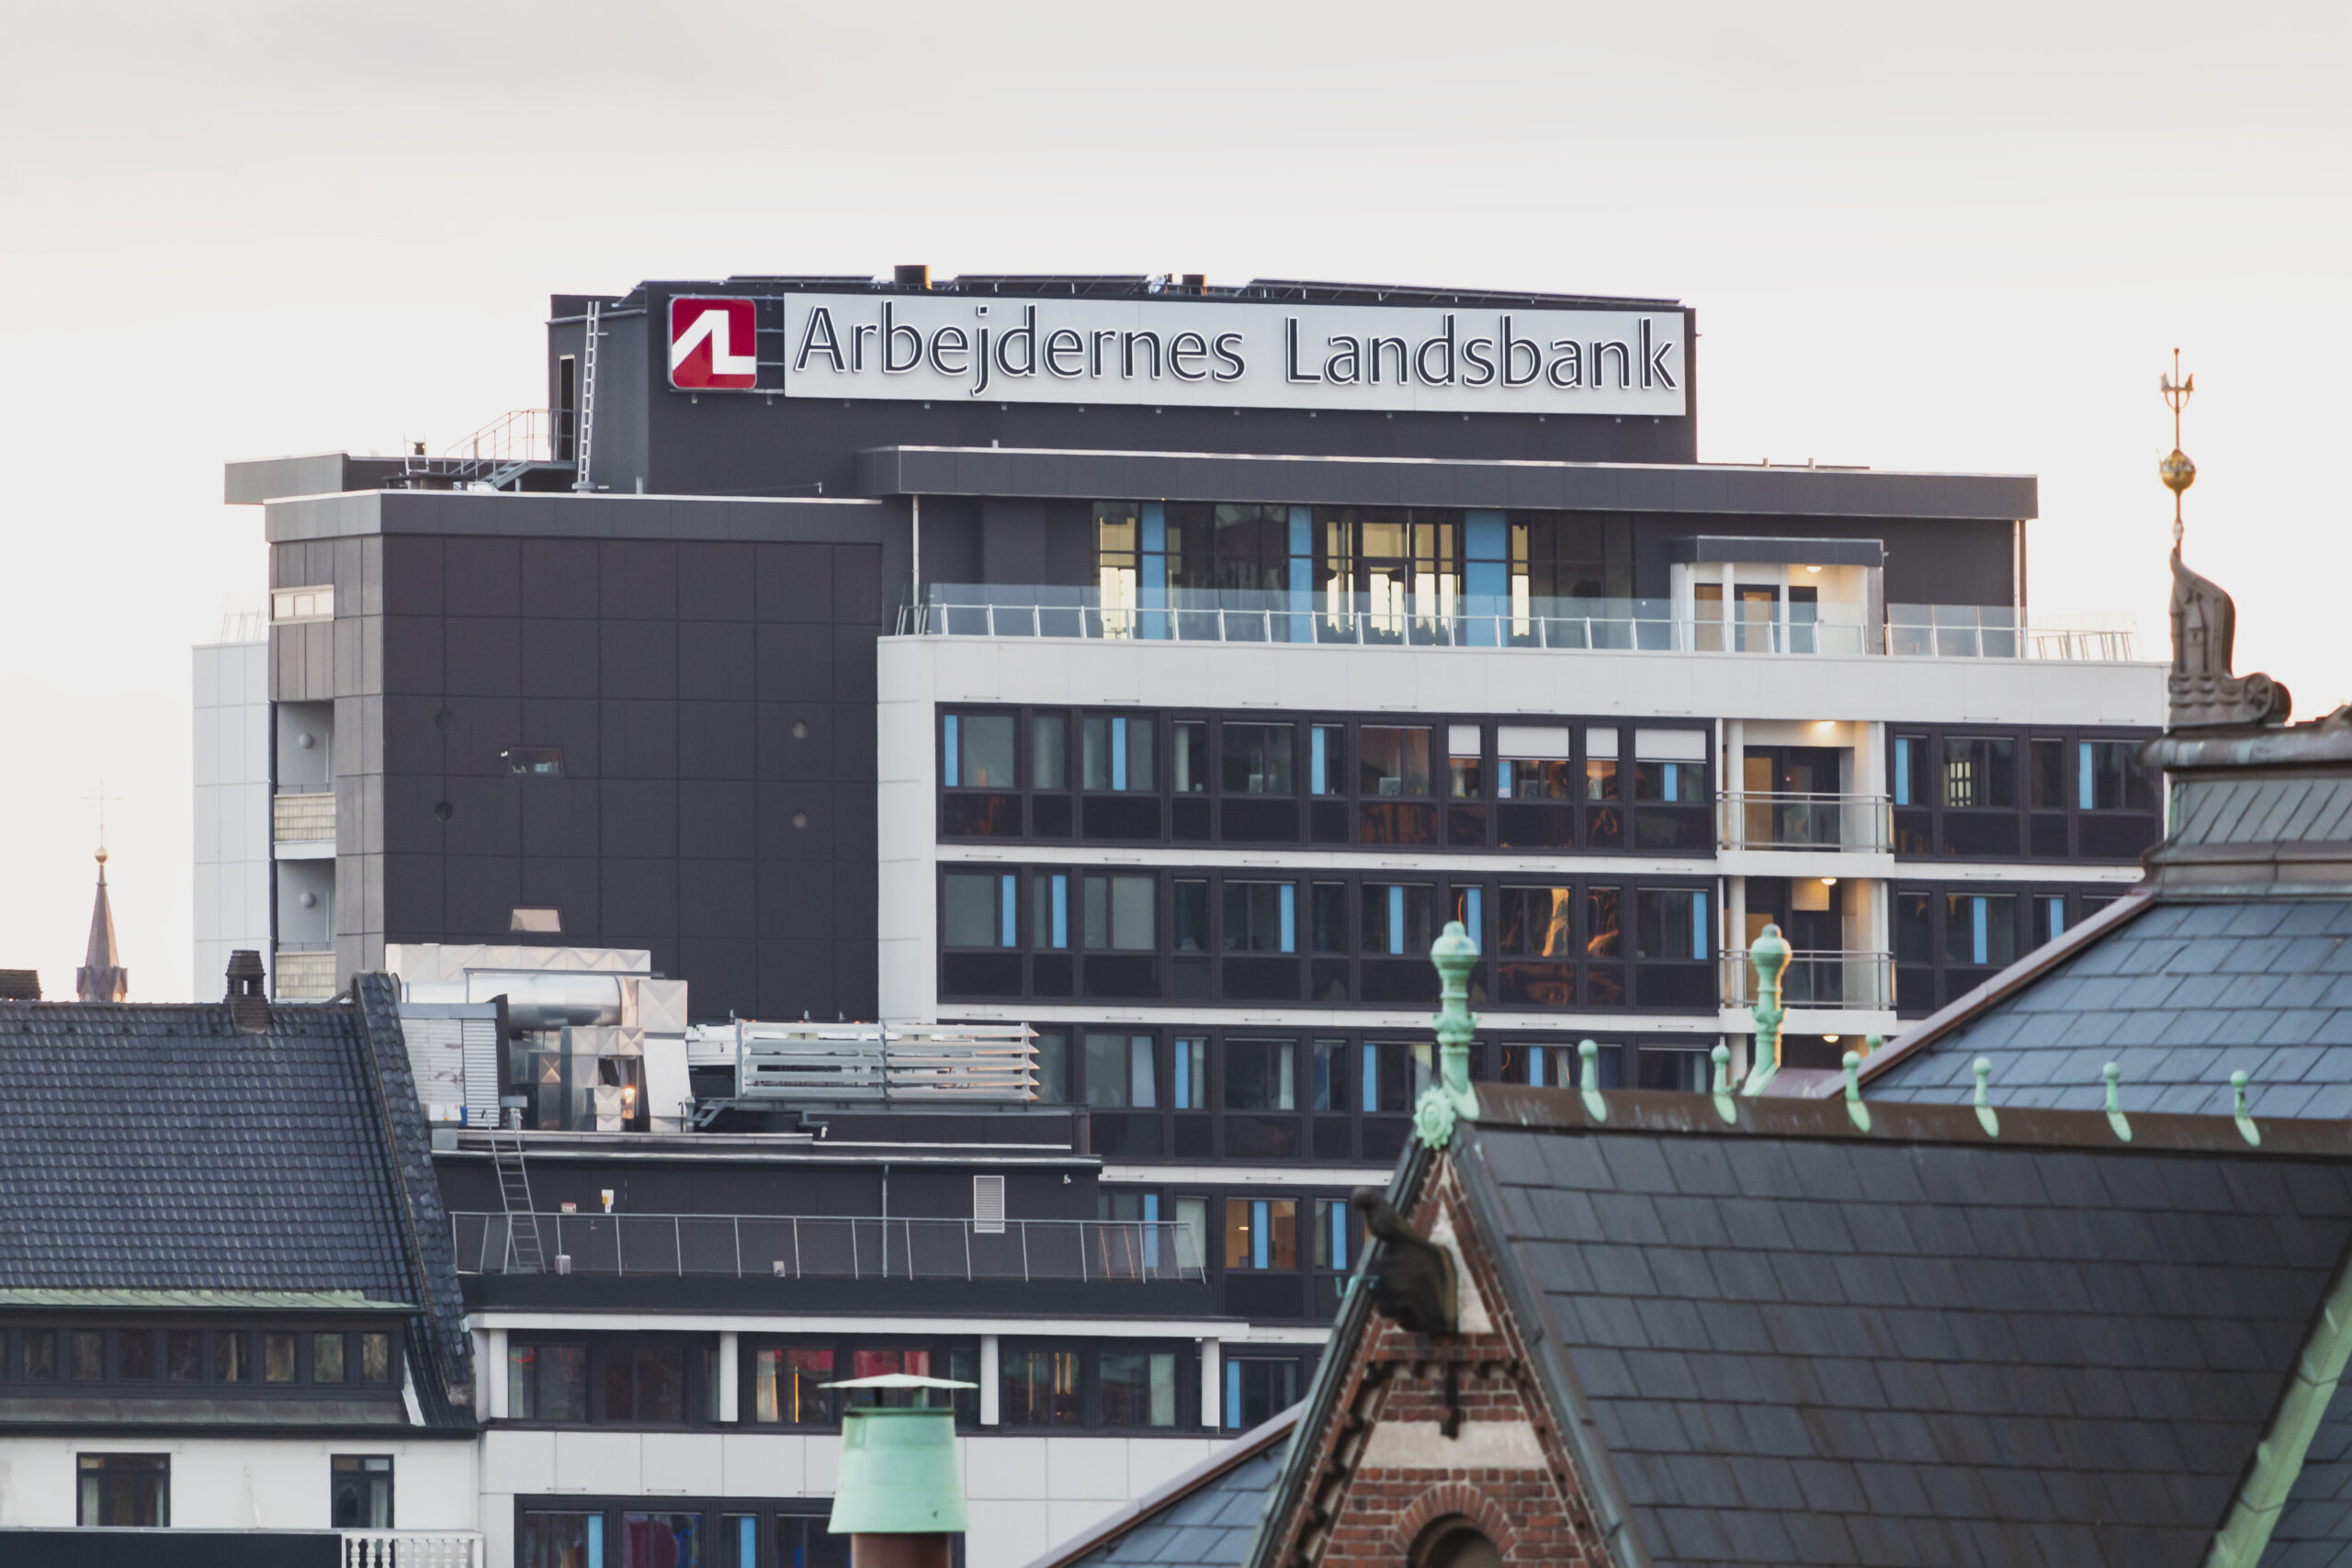 Dinamarca: Los empleados del banco recibirán mantas para hacer frente a las bajas temperaturas de la oficina